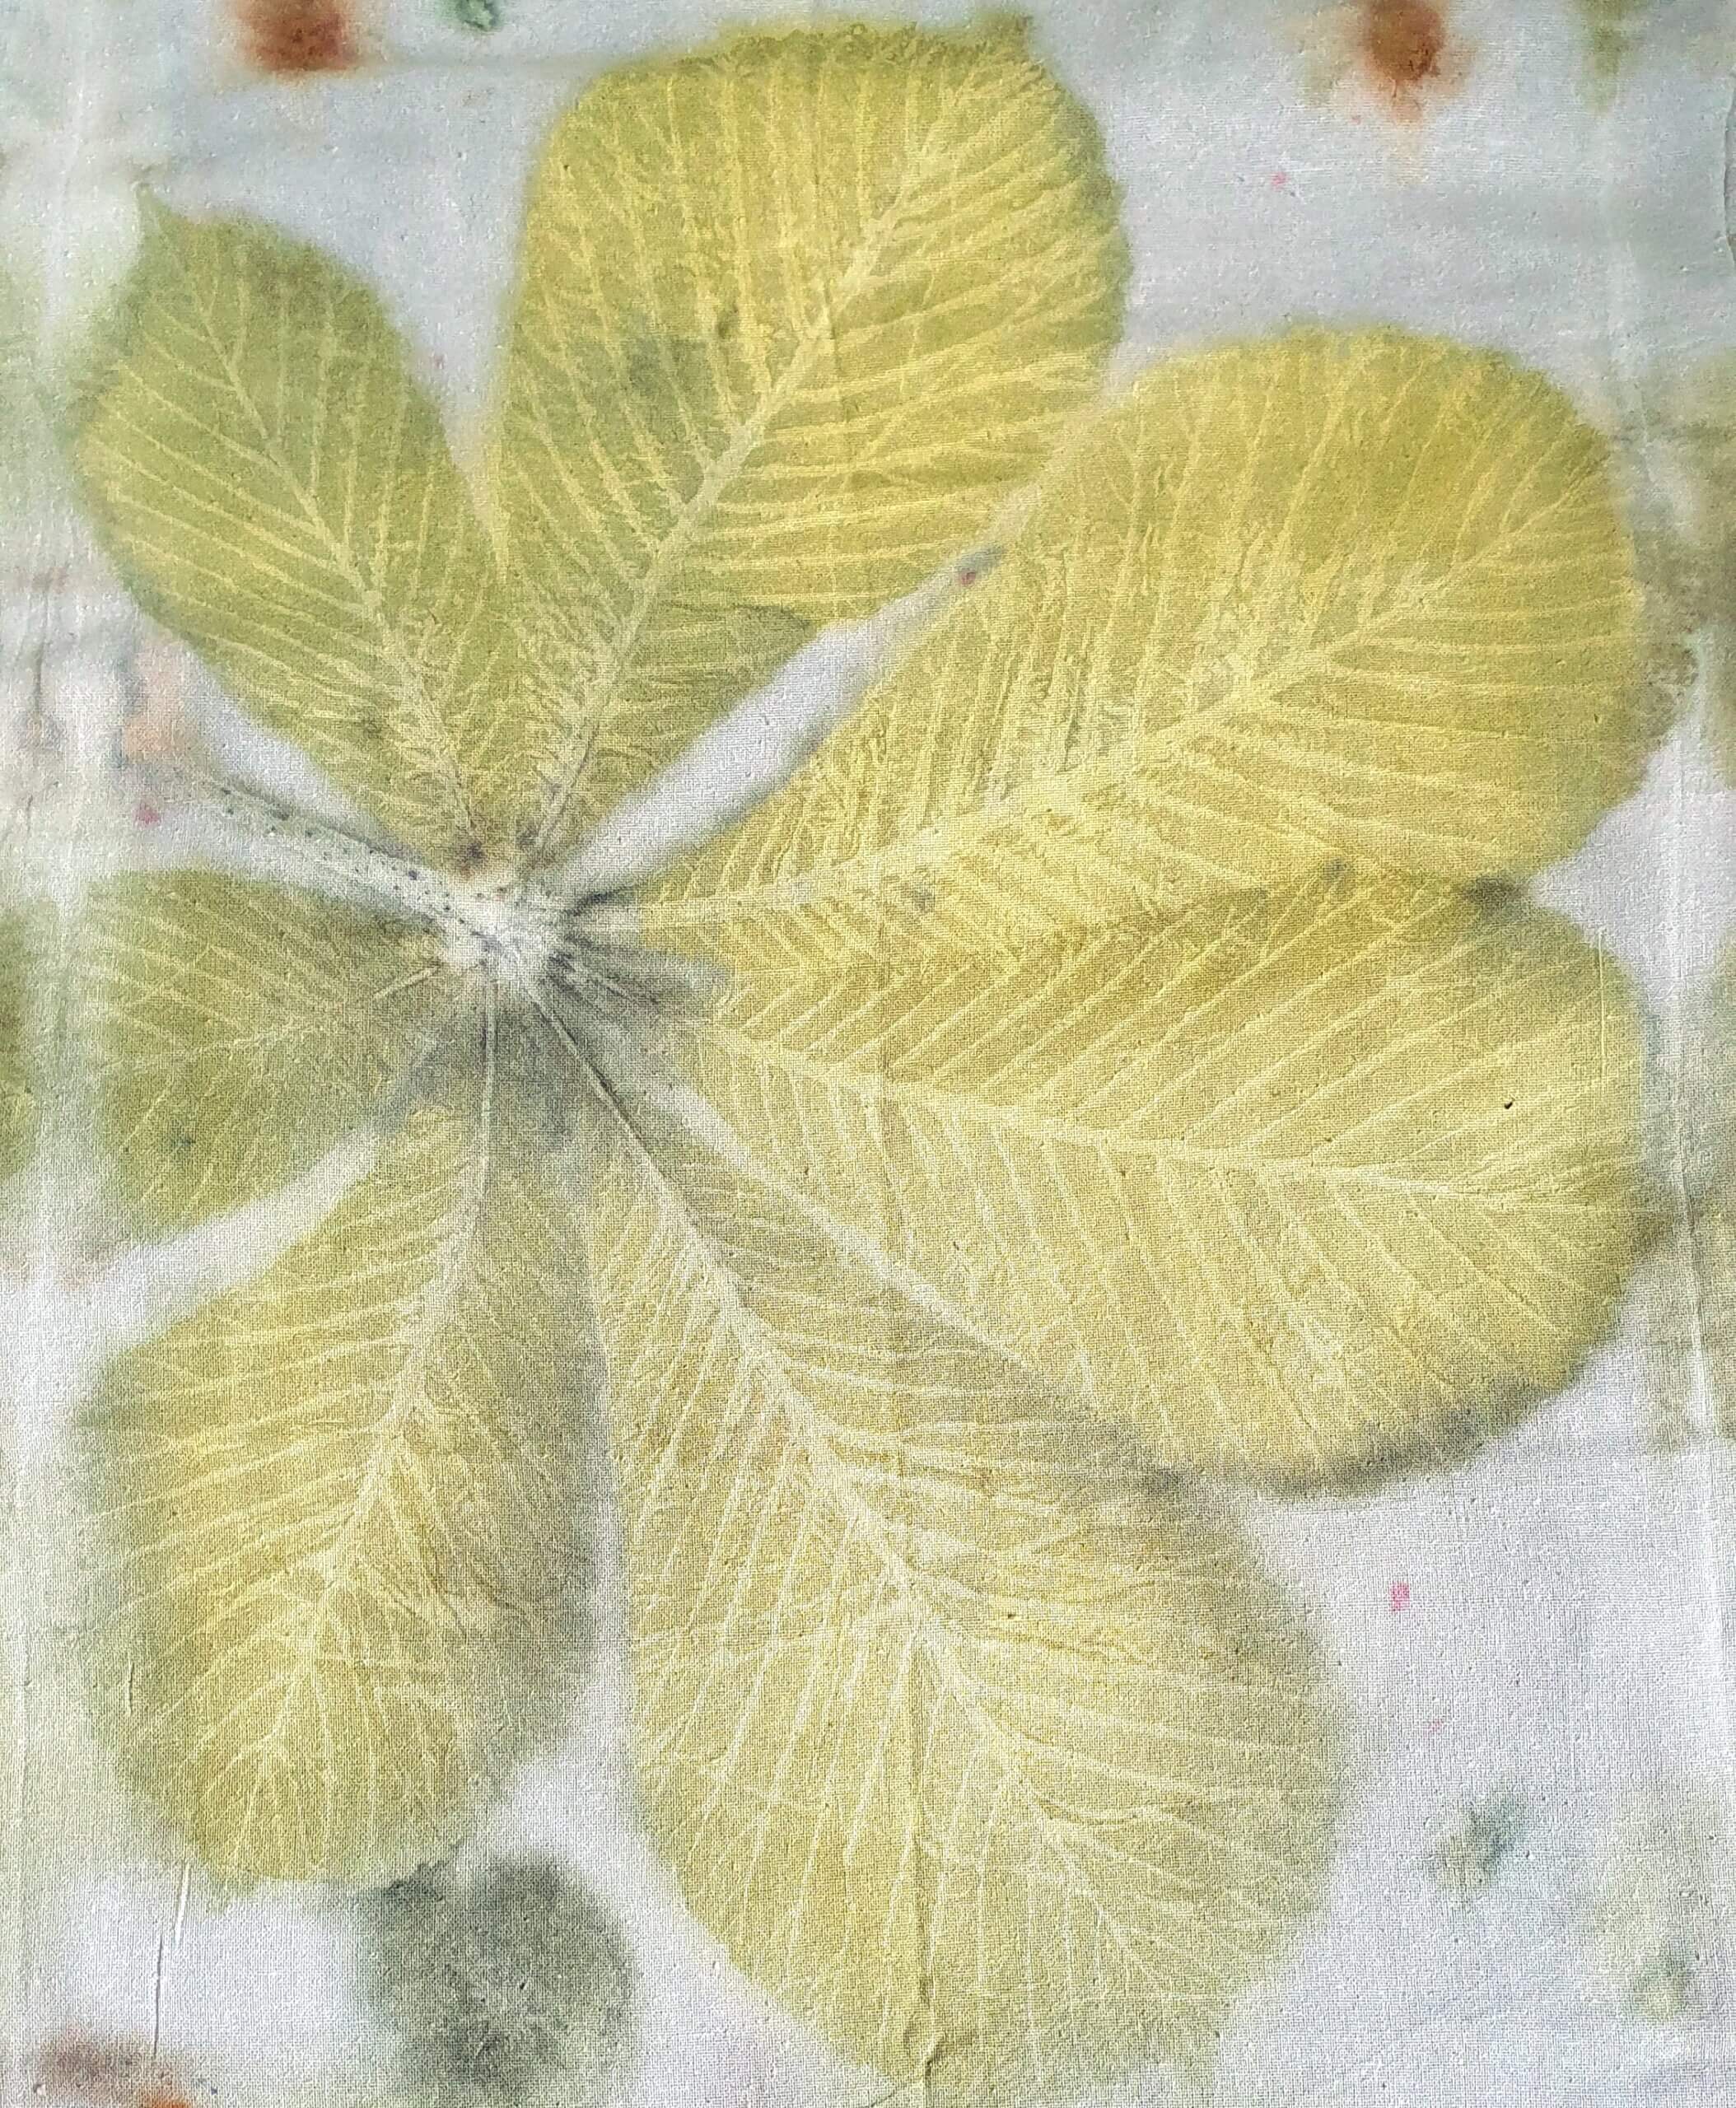 Ecoprint van kastanjeblad op zijde.